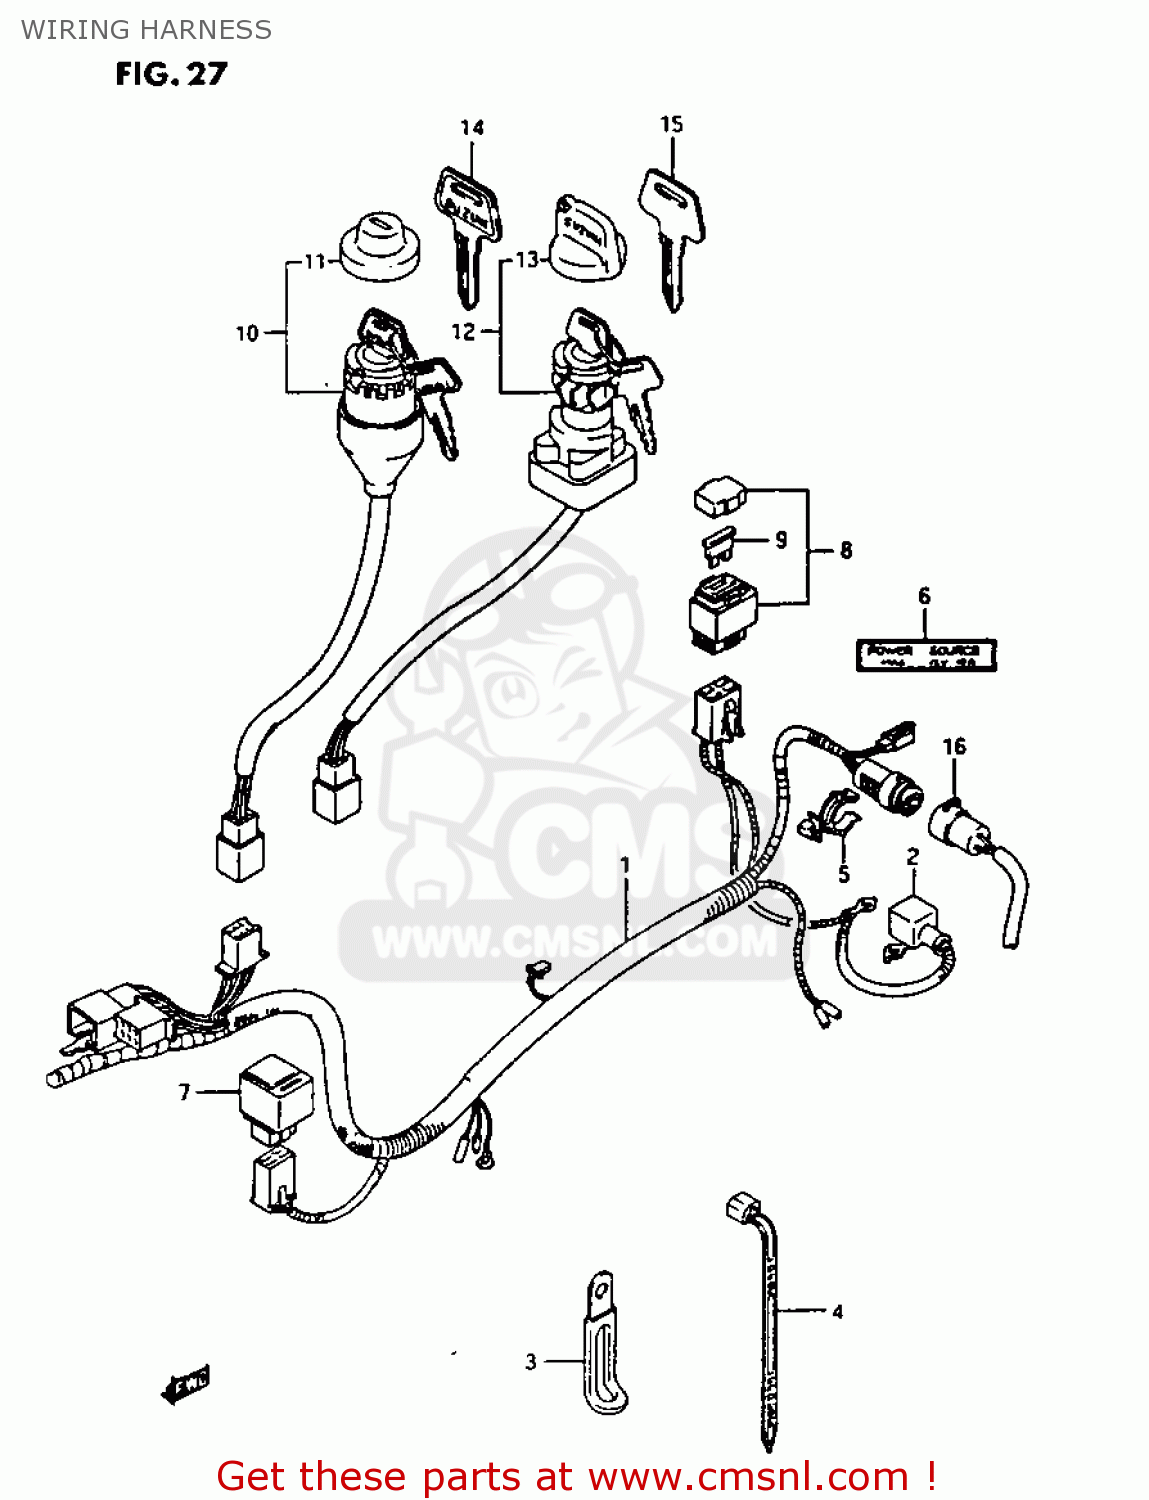 1987 Suzuki Quad Runner 250 Wiring Diagram from images.cmsnl.com